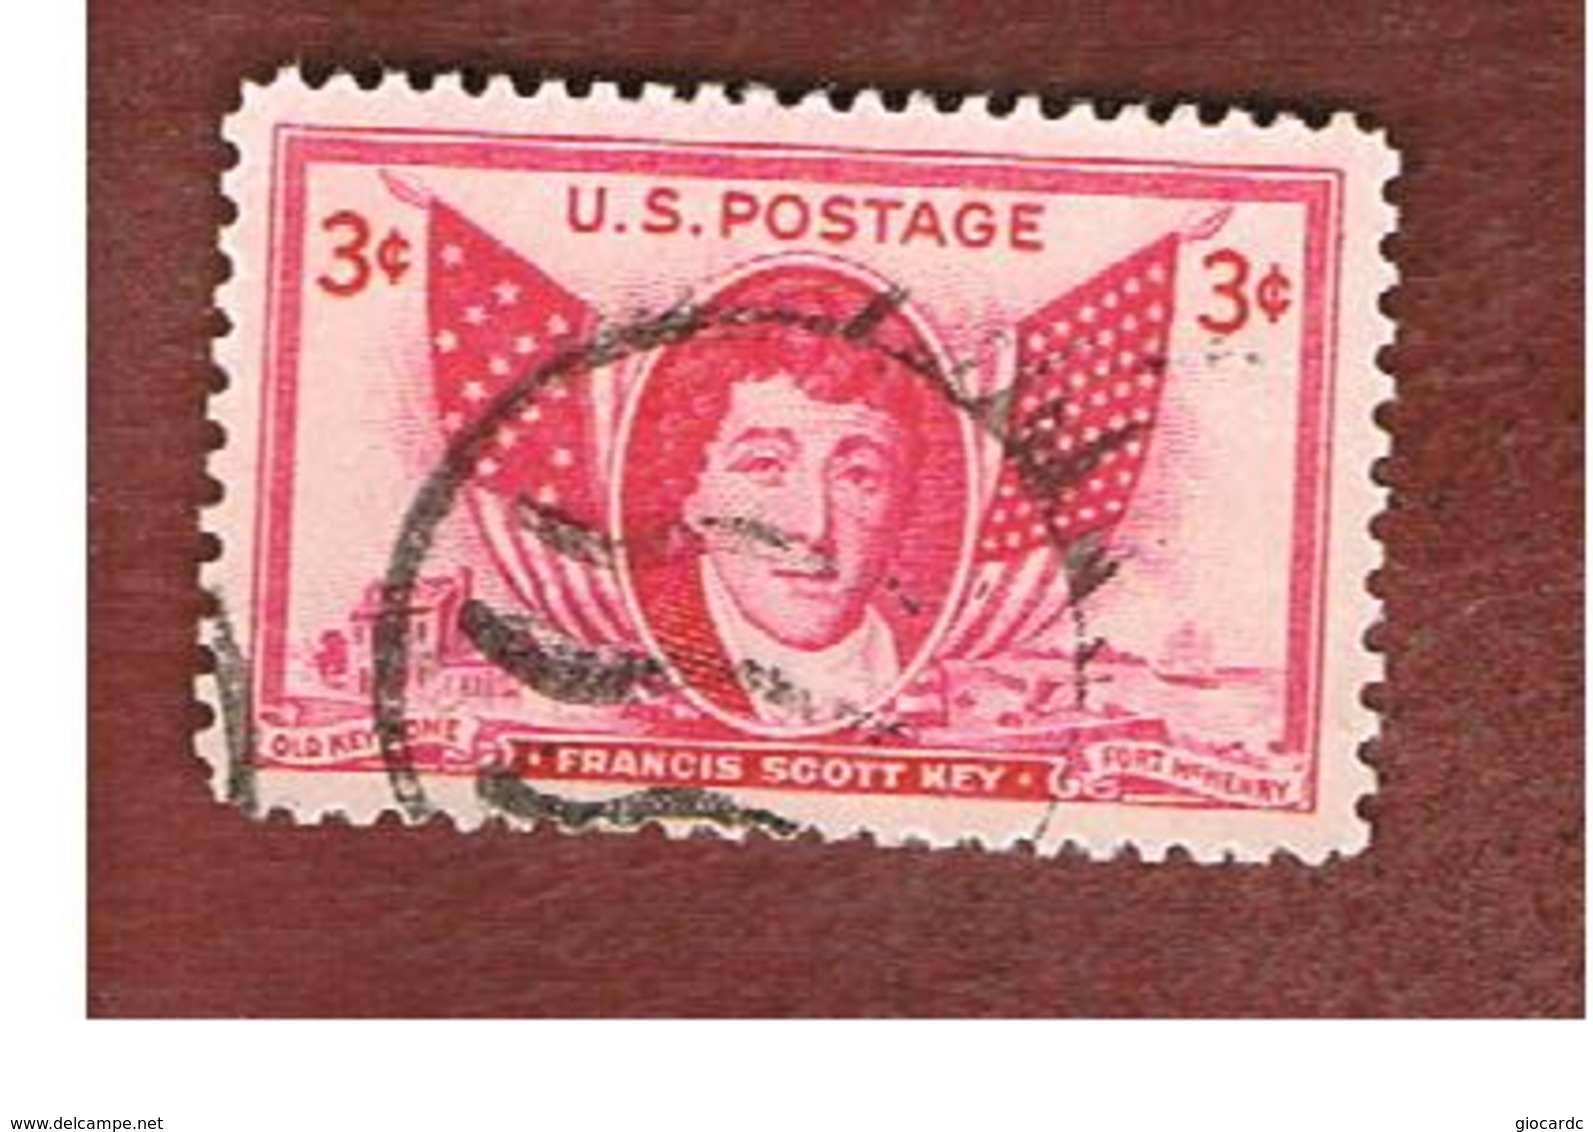 STATI UNITI (U.S.A.) - SG 959  - 1948 F.S. KEY, AUTHOR          -  USED° - Usati